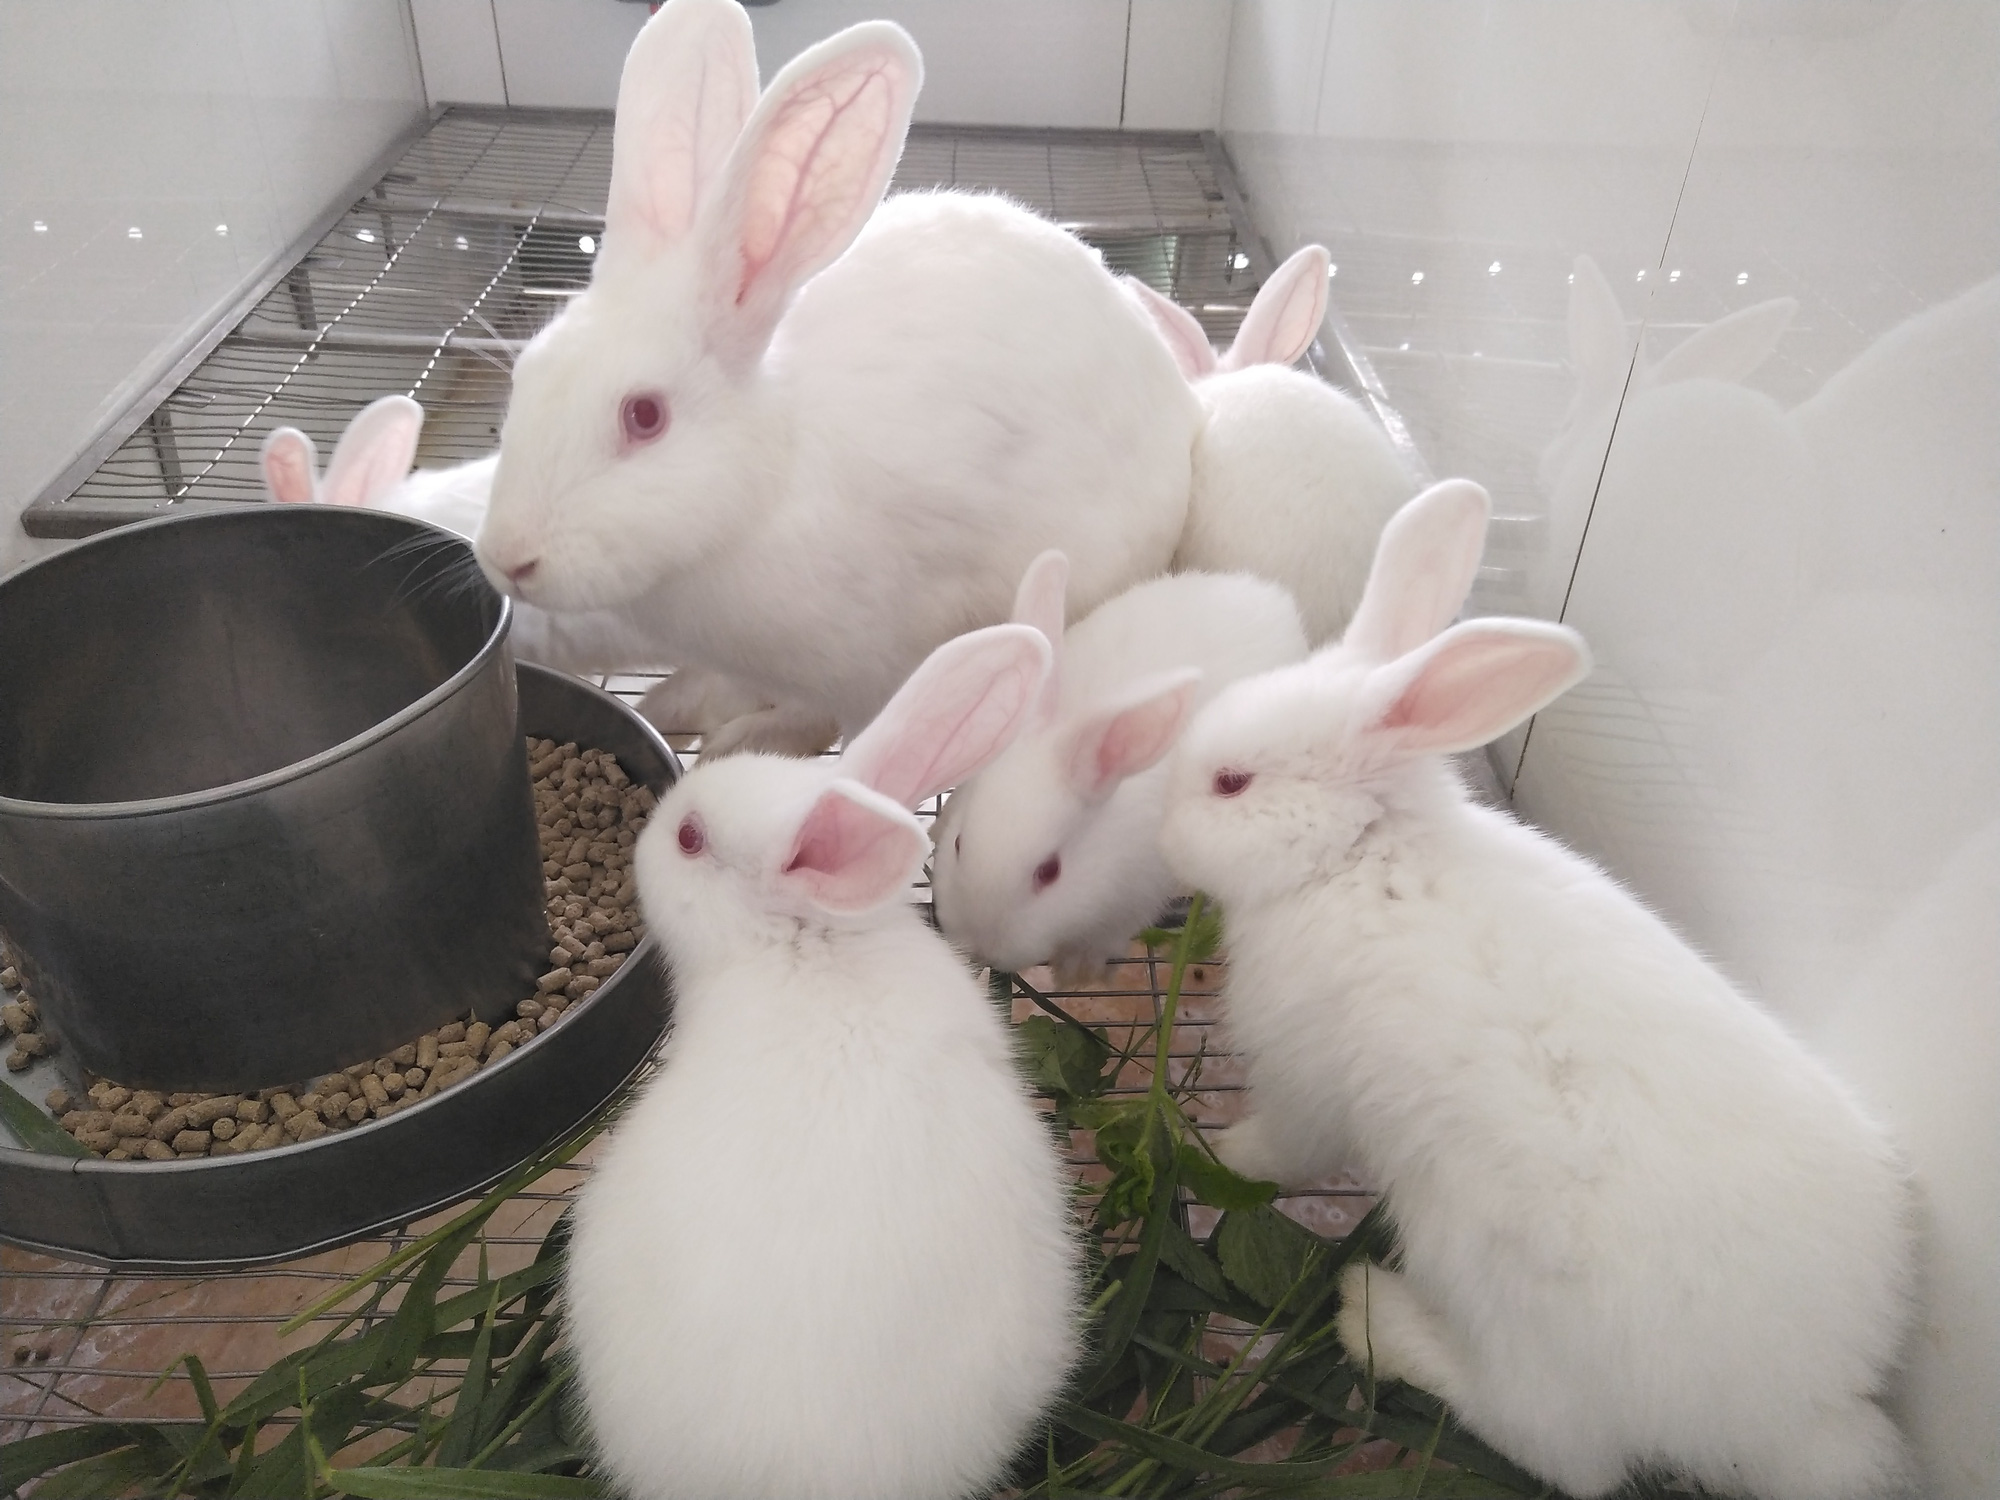 Easter Bunny Thỏ Trắng Phim Hoạt Hình  Thỏ phục sinh vật chất png tải về   Miễn phí trong suốt Rabits Và Thỏ Rừng png Tải về